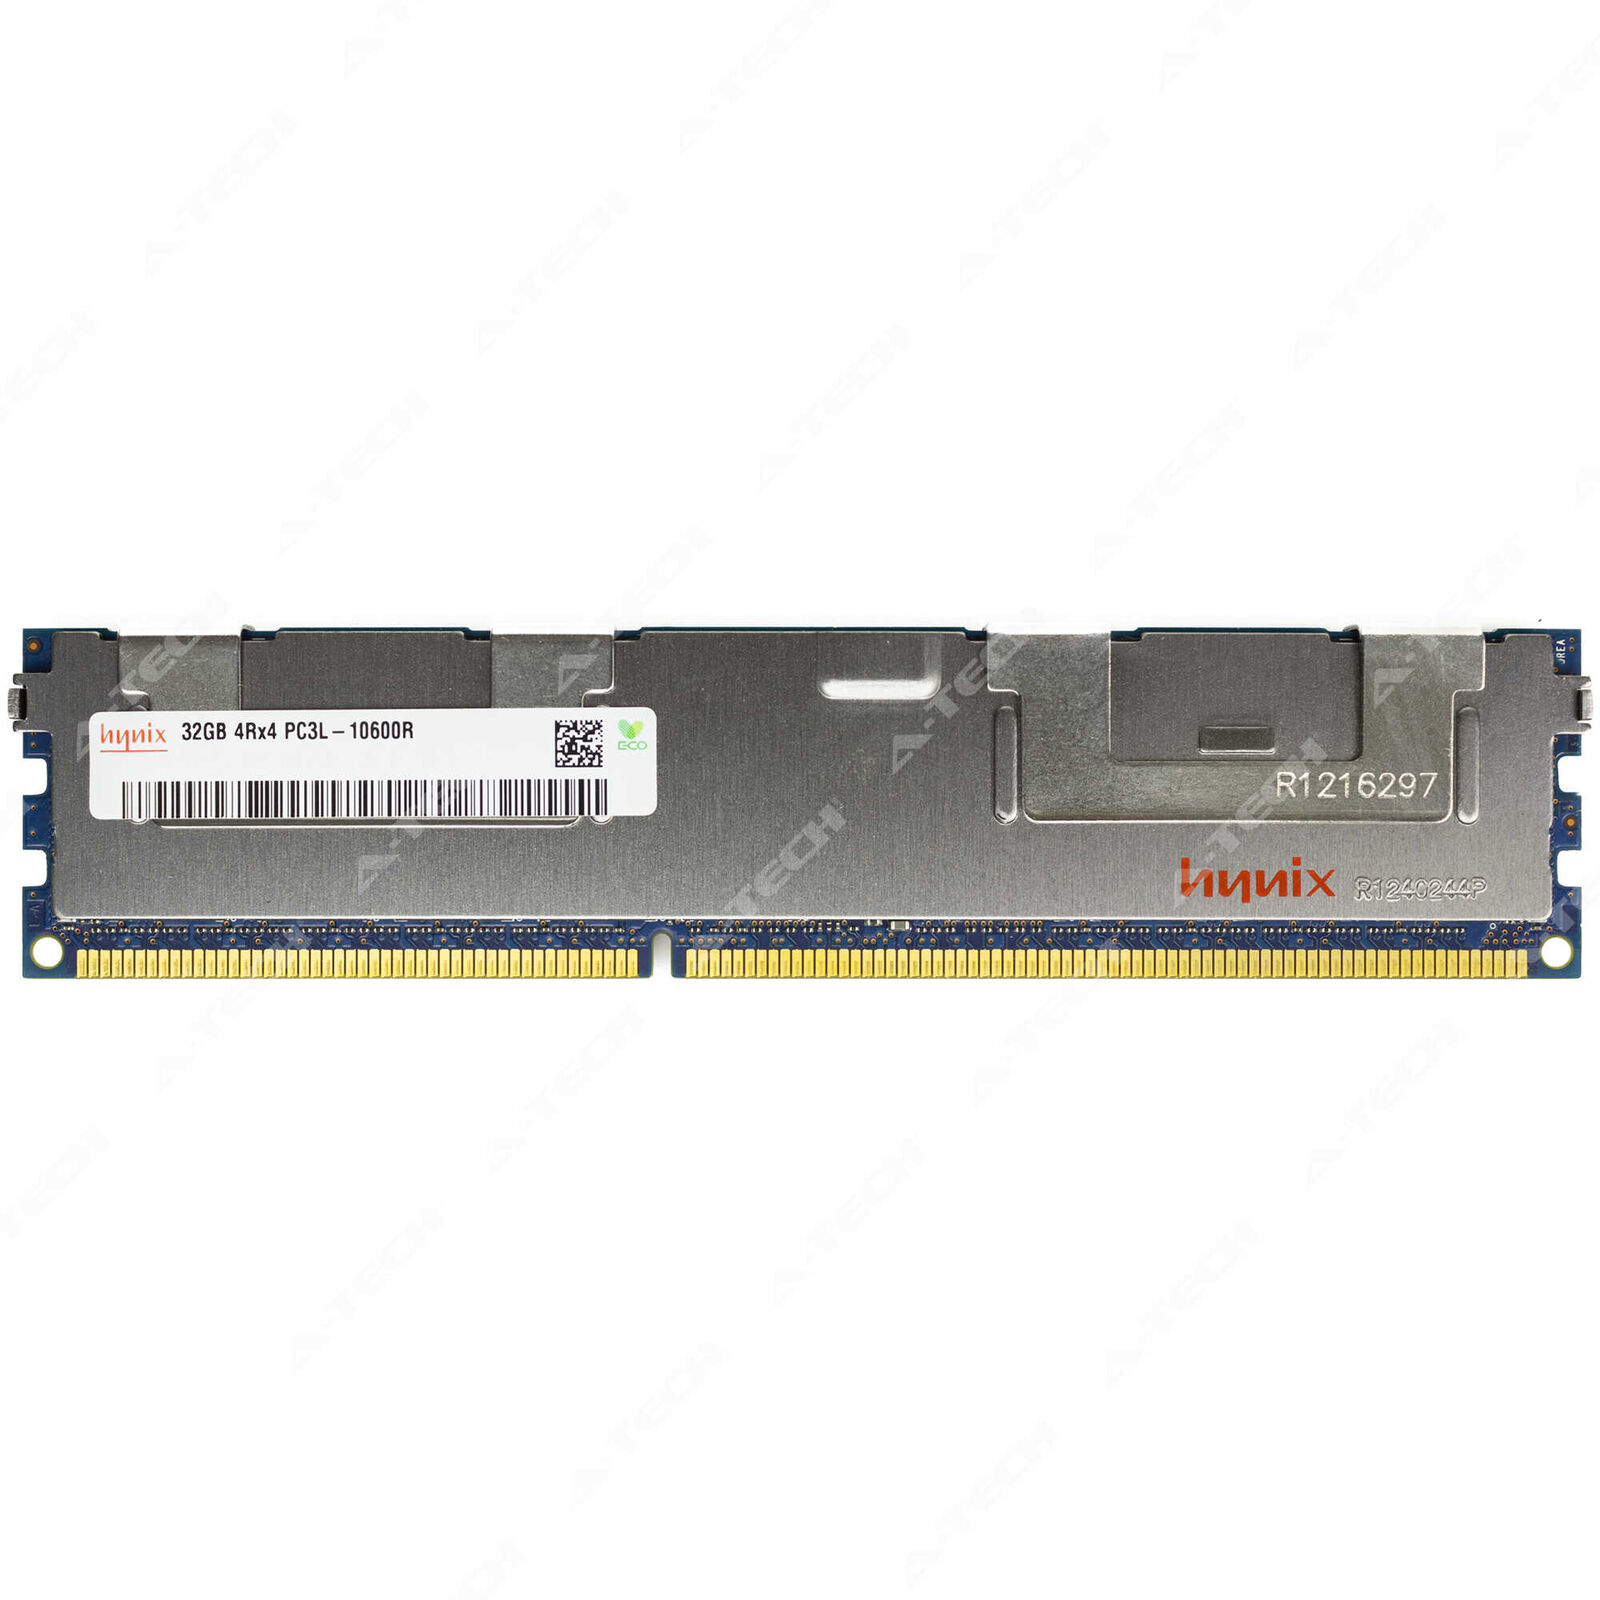 Hynix 32GB 4Rx4 PC3L-10600 RDIMM DDR3L 1333 ECC REG Registered Server Memory RAM